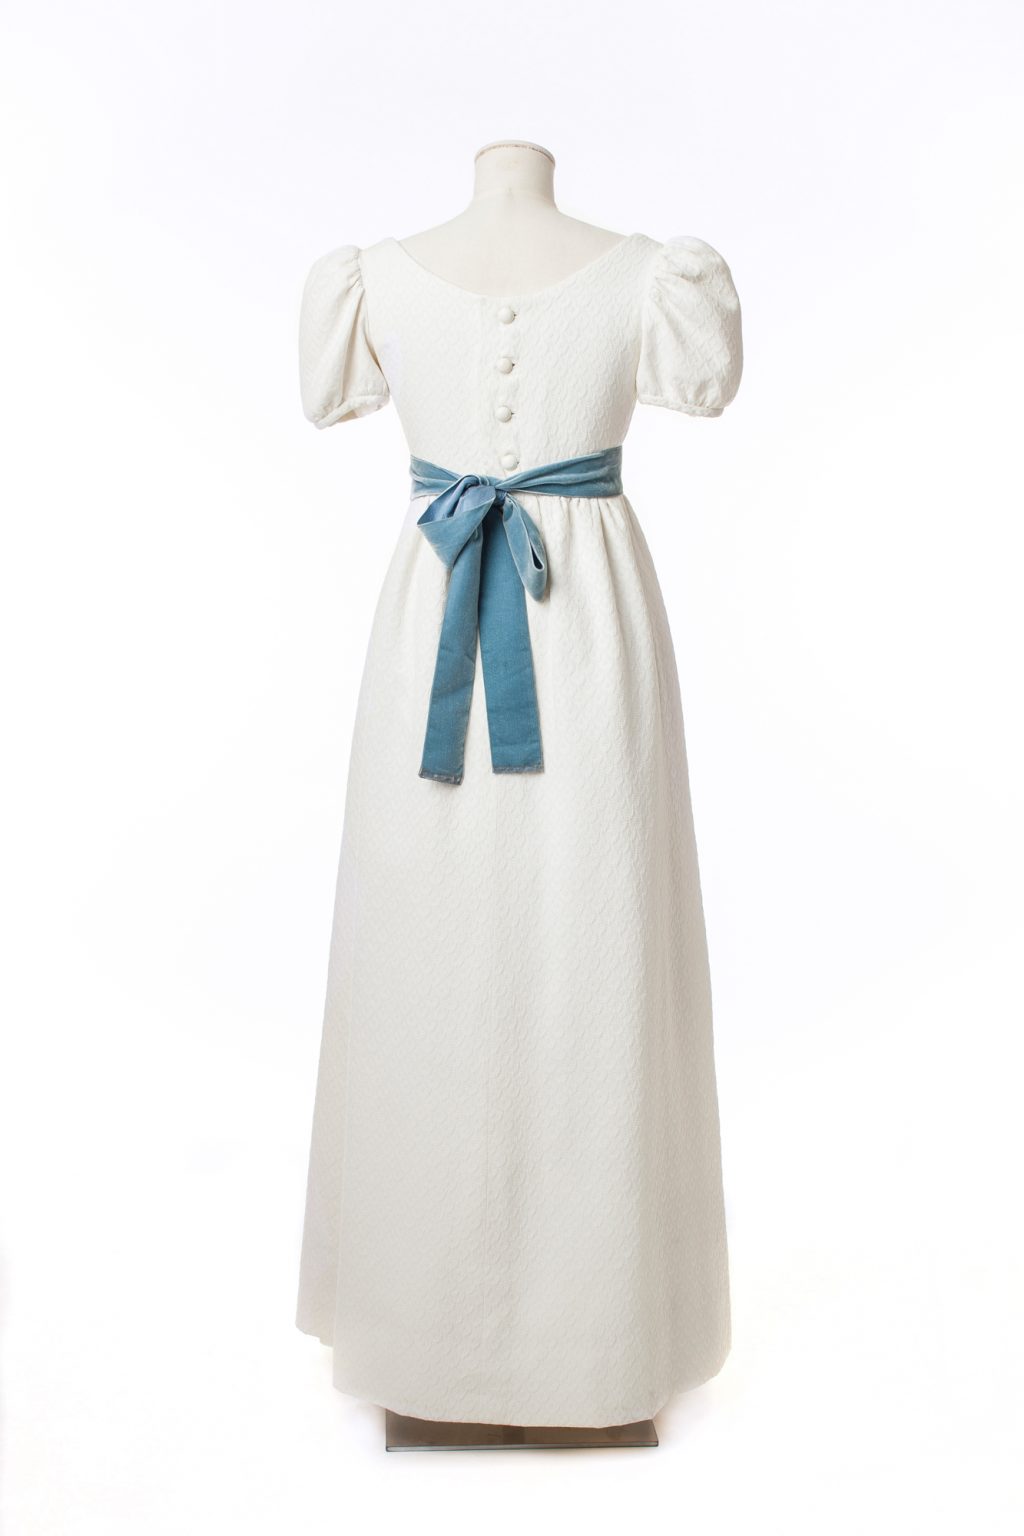 Λευκό βαμβακερό φόρεμα της Όντρεϊ ΧέπμπορνΛευκό βαμβακερό φόρεμα της Όντρεϊ Χέπμπορν